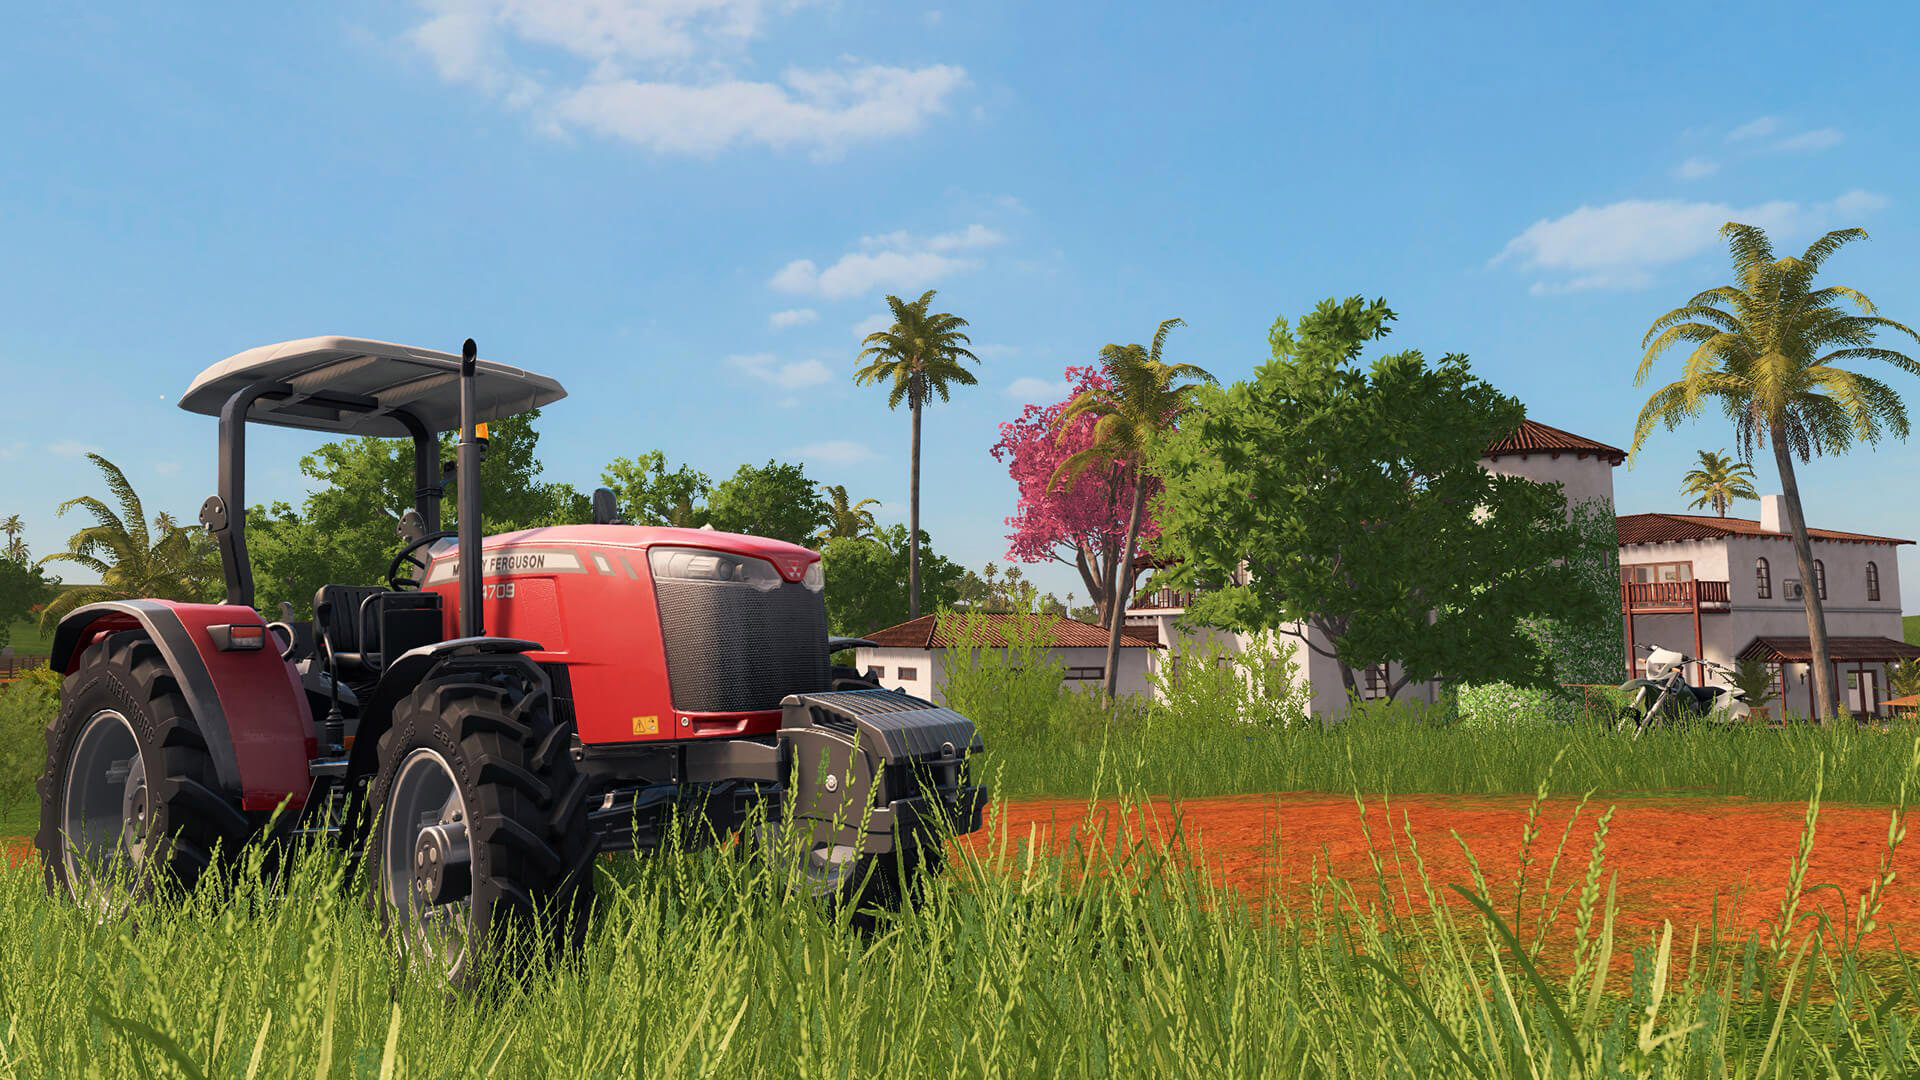 fond d'écran de simulateur agricole,champ,ferme,véhicule,zone rurale,herbe